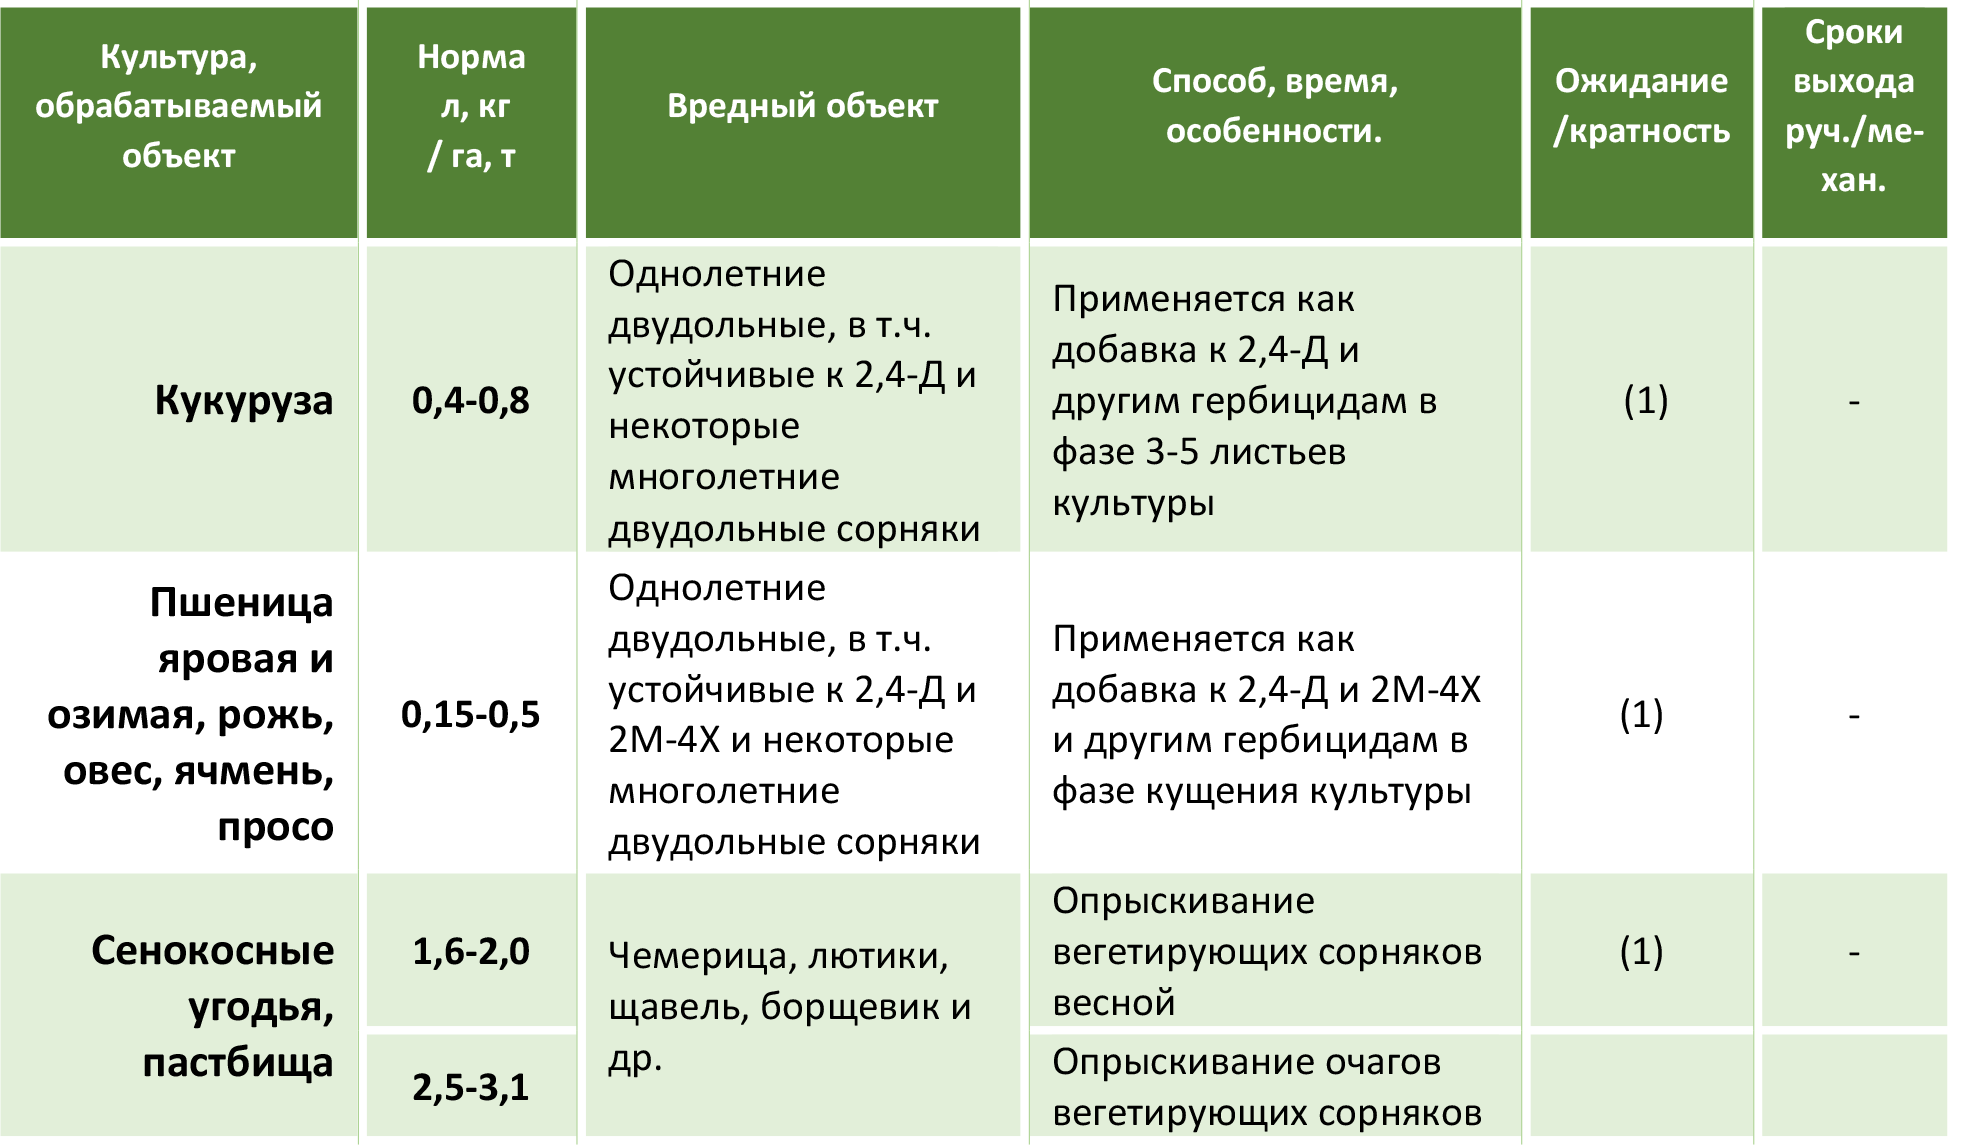 Инструкция по применению и состав гербицида Аксиал, дозировка и аналоги